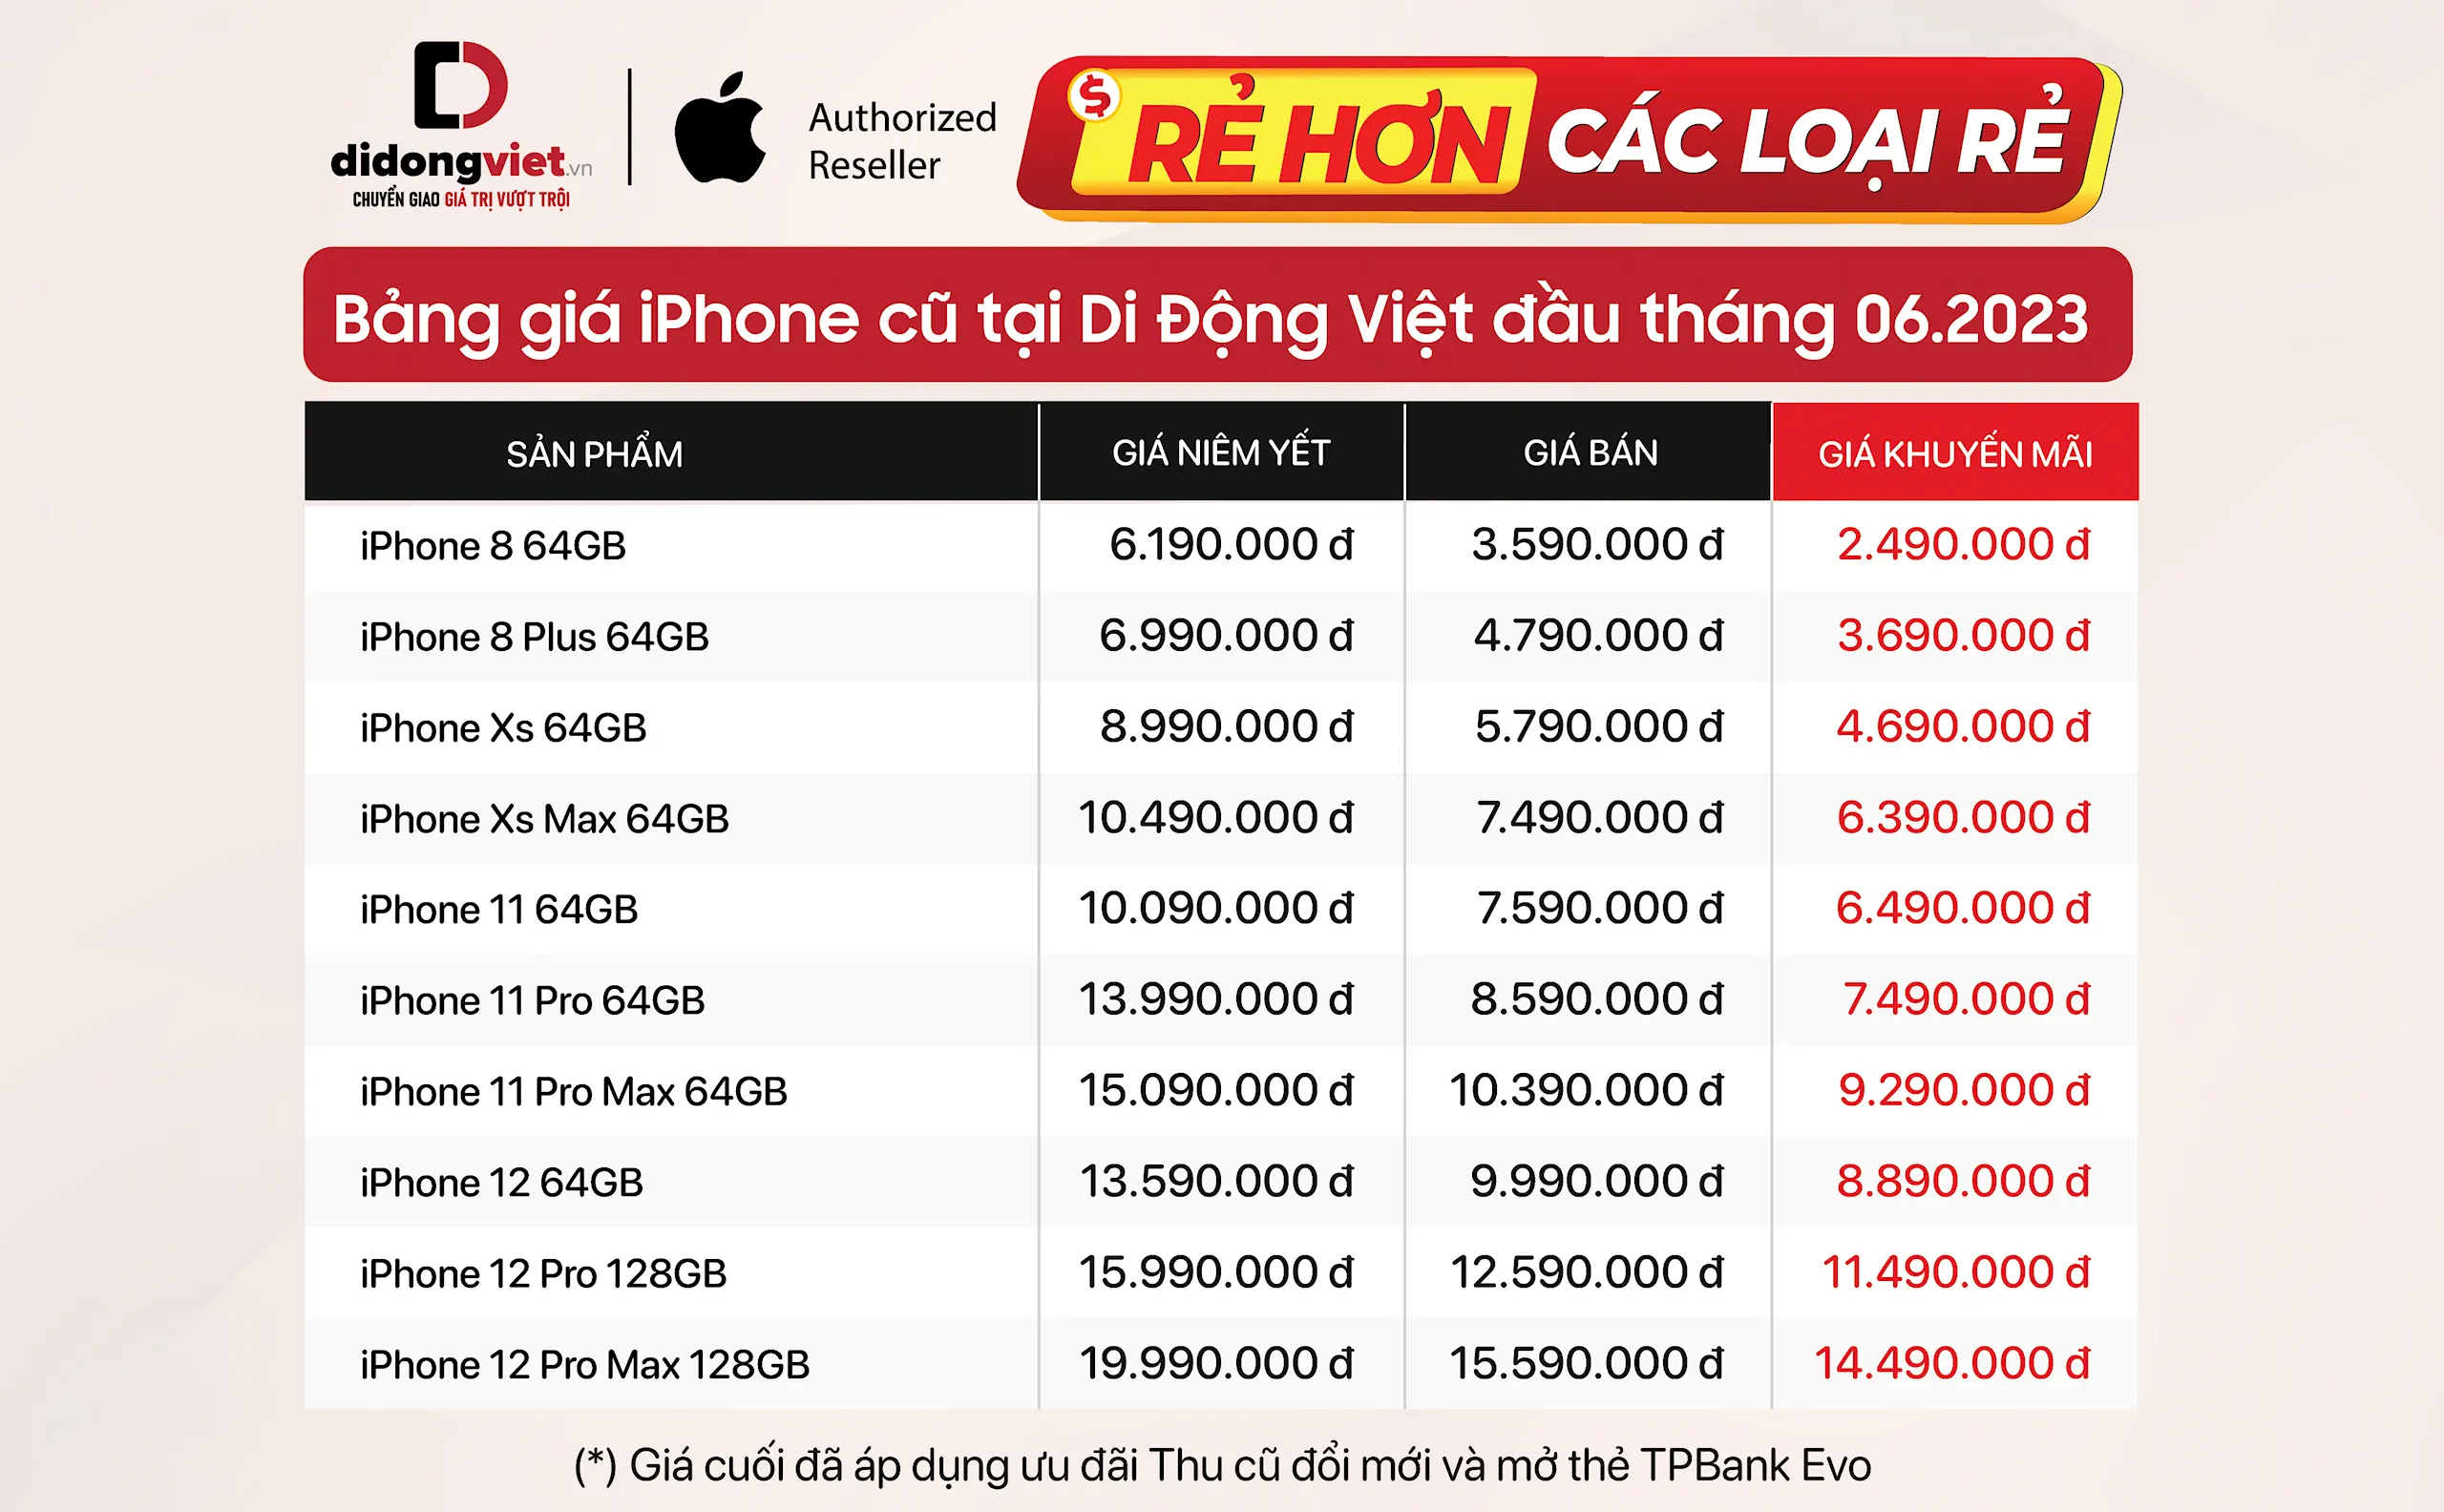 Bảng giá iPhone cũ đầu tháng 6: Tiếp tục giảm sâu, iPhone 12 chỉ từ 8.89 triệu đồng